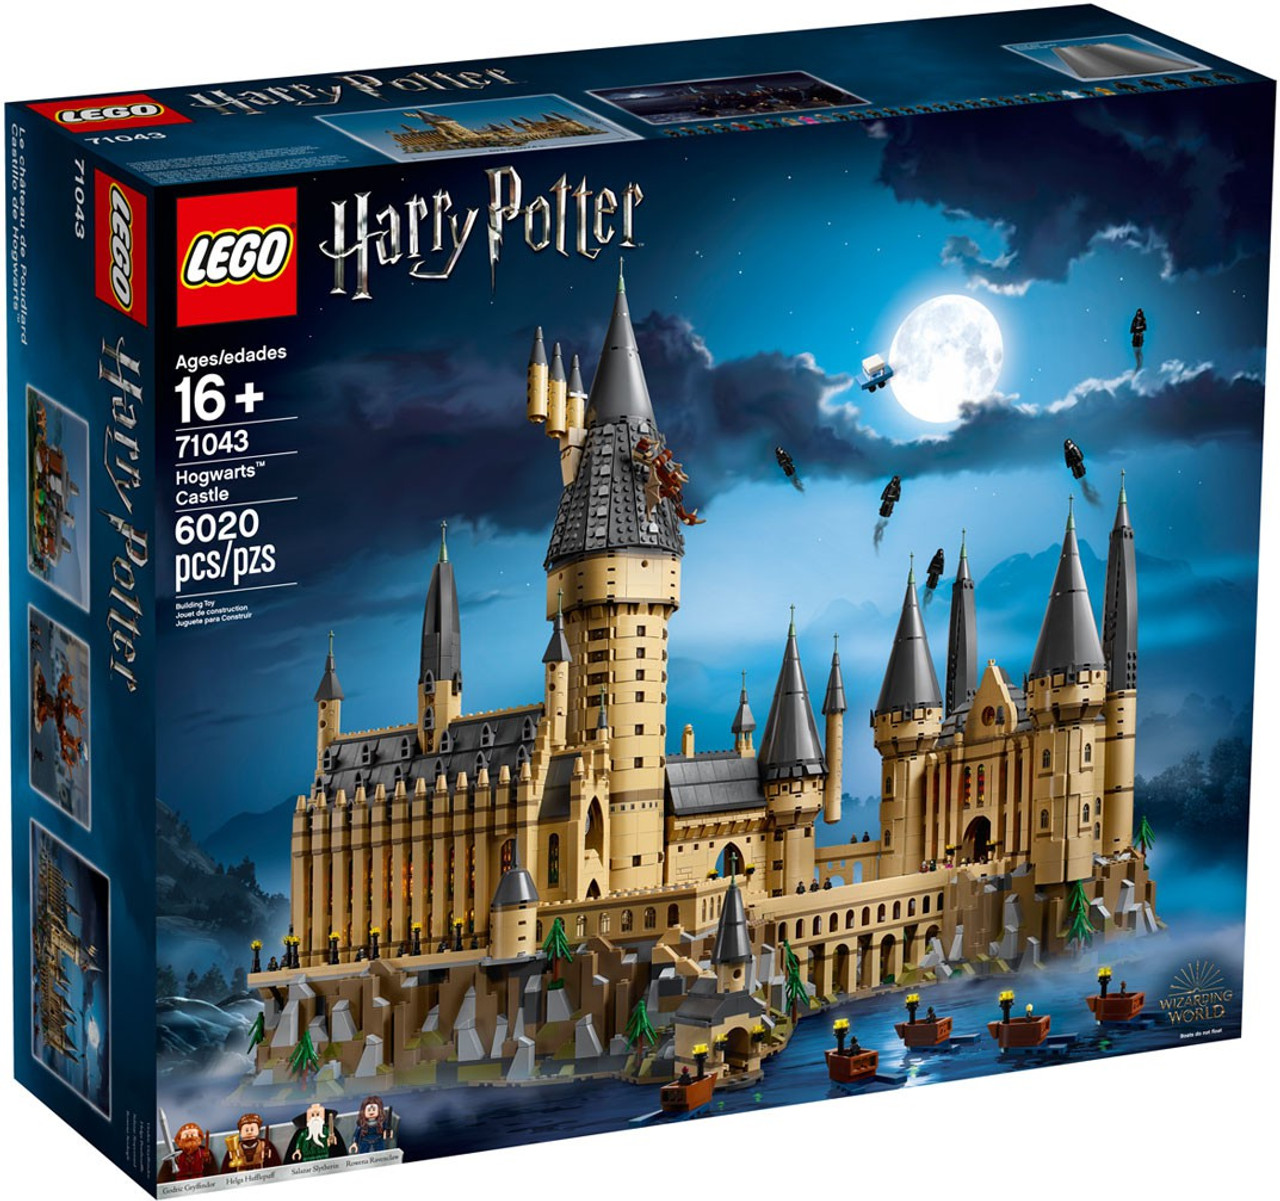 LEGO Harry Potter Hogwarts Castle Set 71043 2018, Damaged Package - ToyWiz